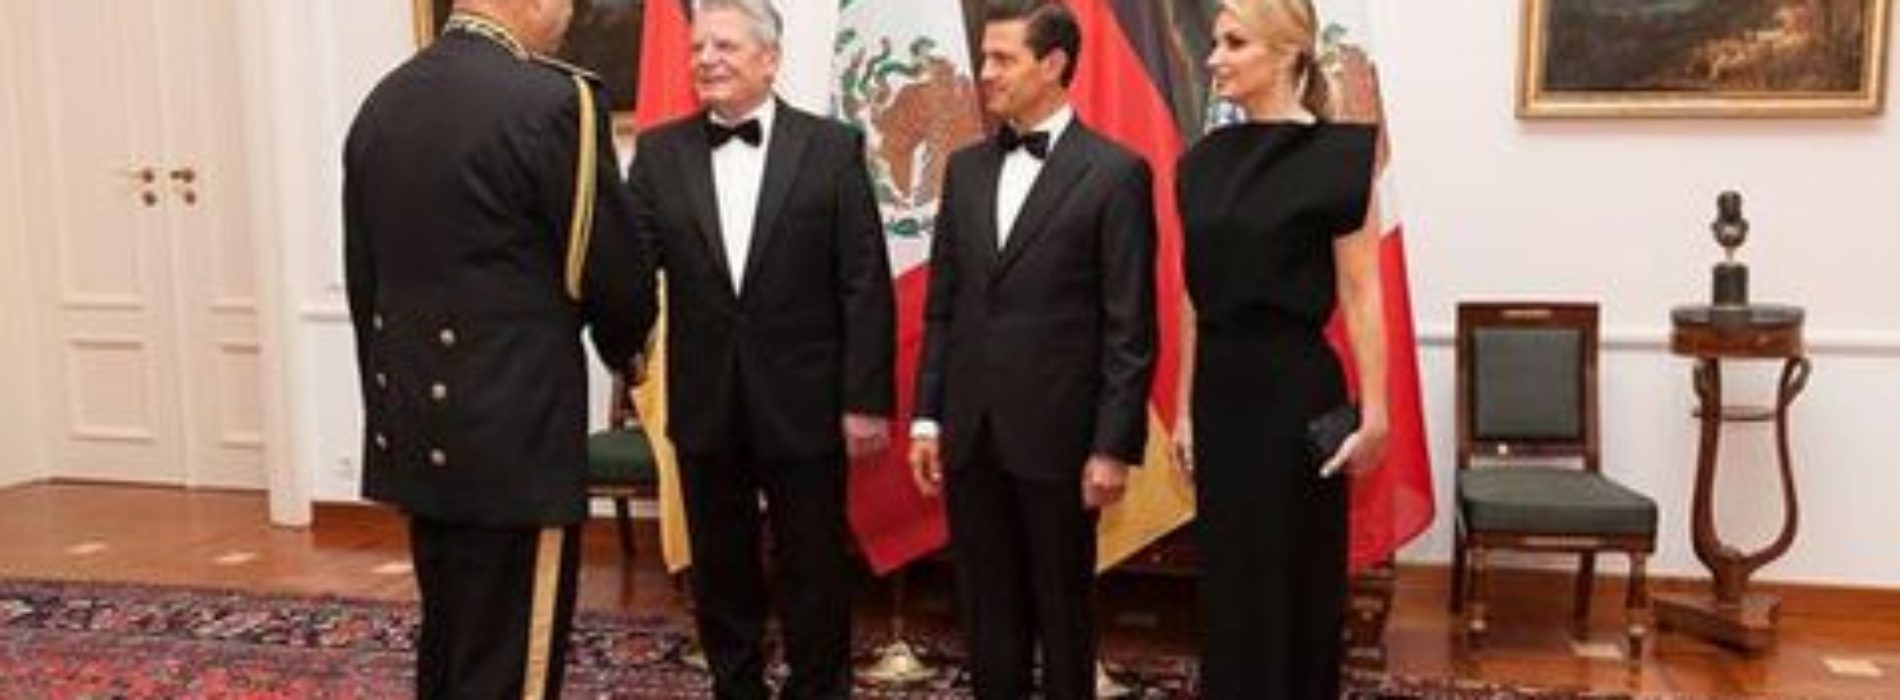 Alemania ofrece a México ayuda en lucha contra crimen